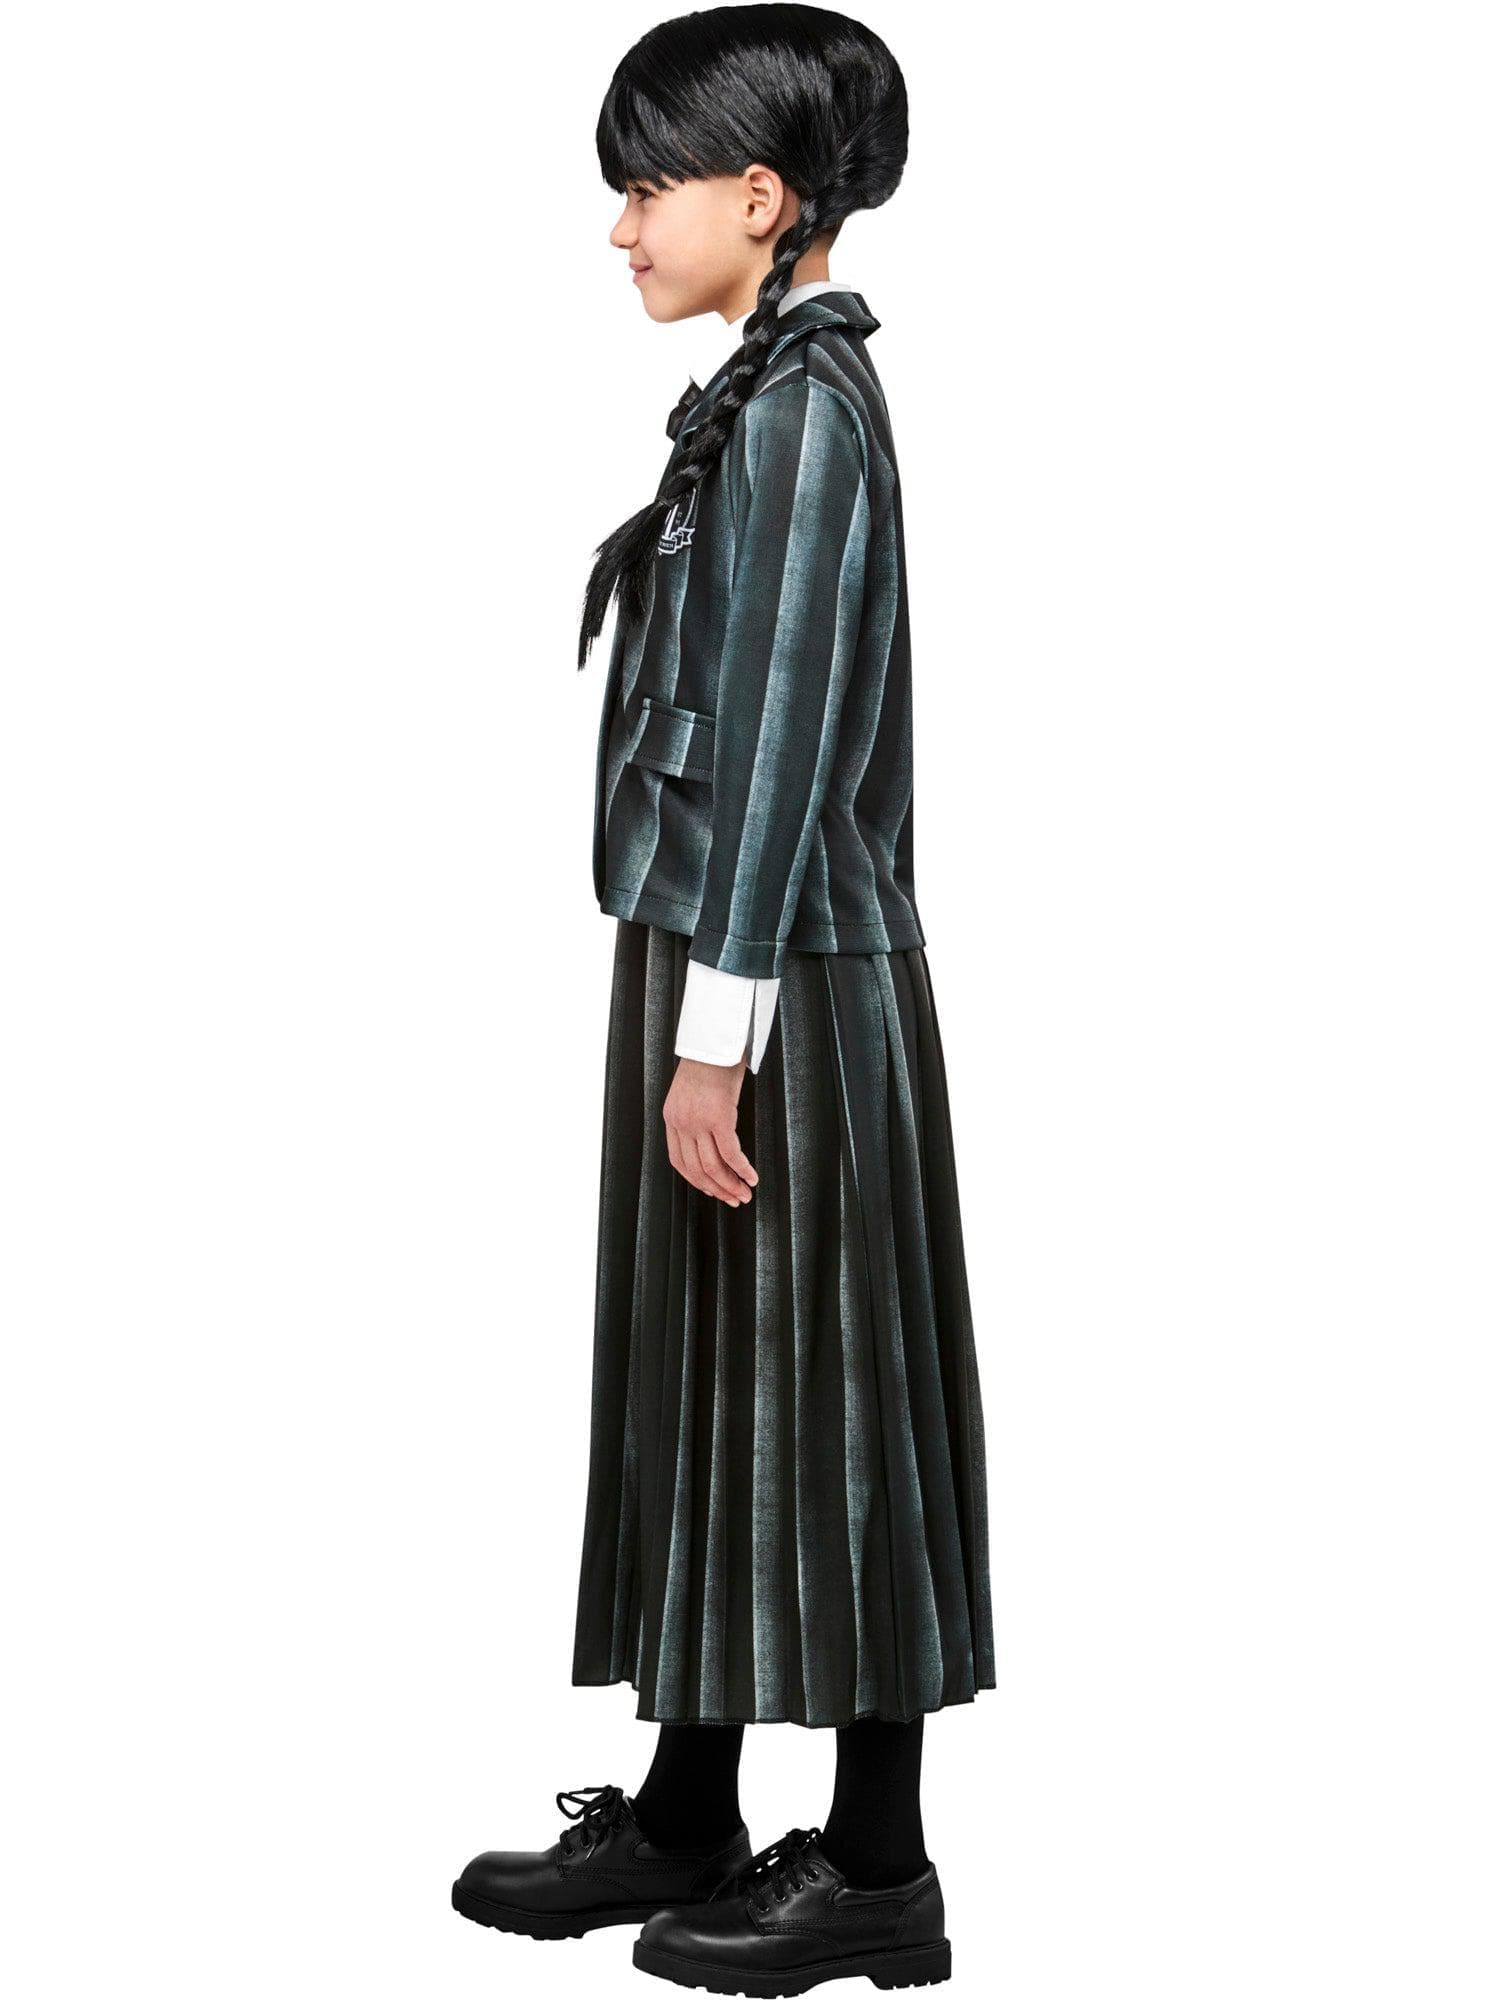 Wednesday Addams Nevermore Academy Uniform Kids Costume - costumes.com